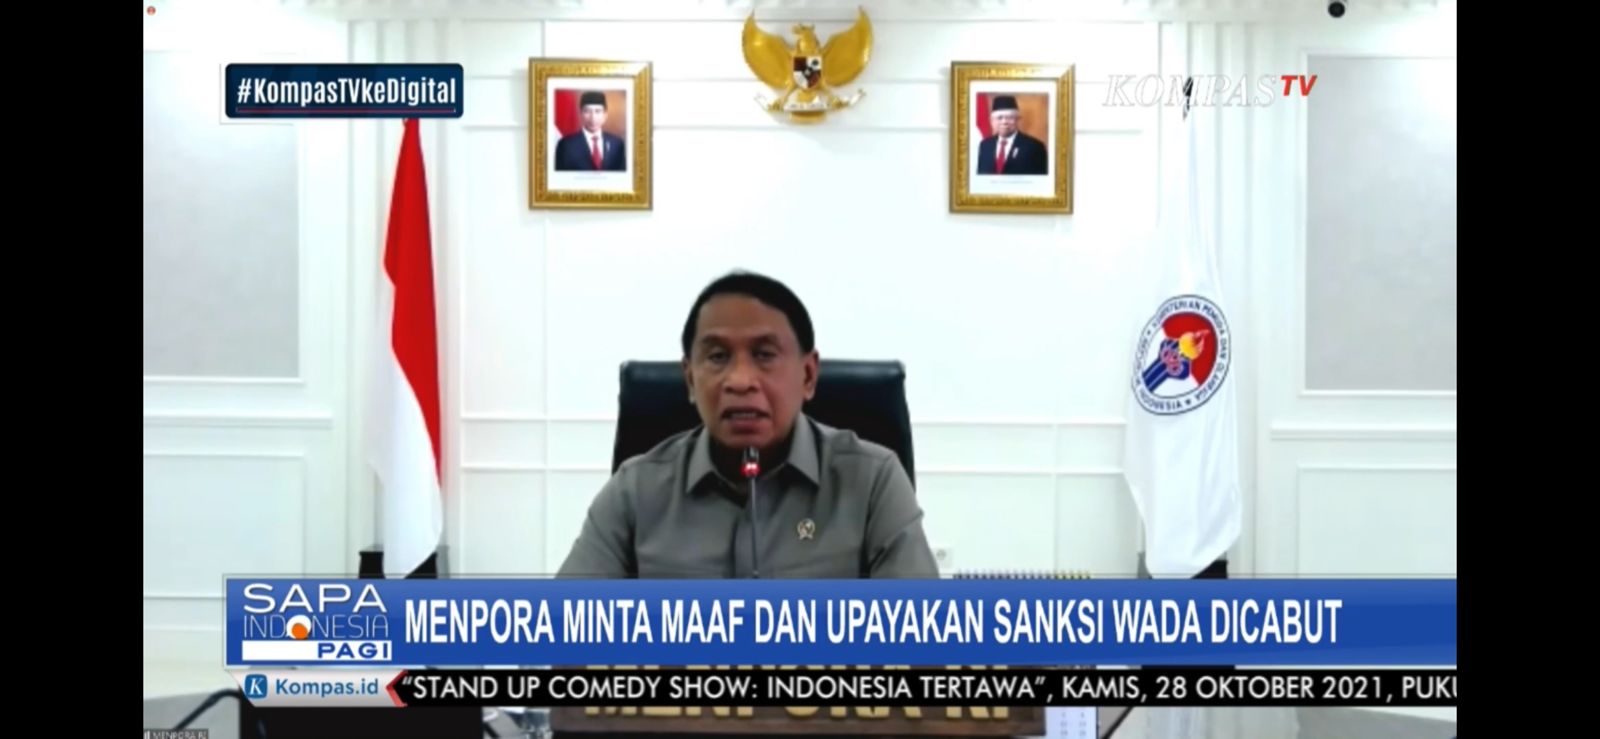 Ini Dua Langkah Cepat yang Dilakukan Menpora Amali agar Indonesia Lepas dari Sanksi WADA